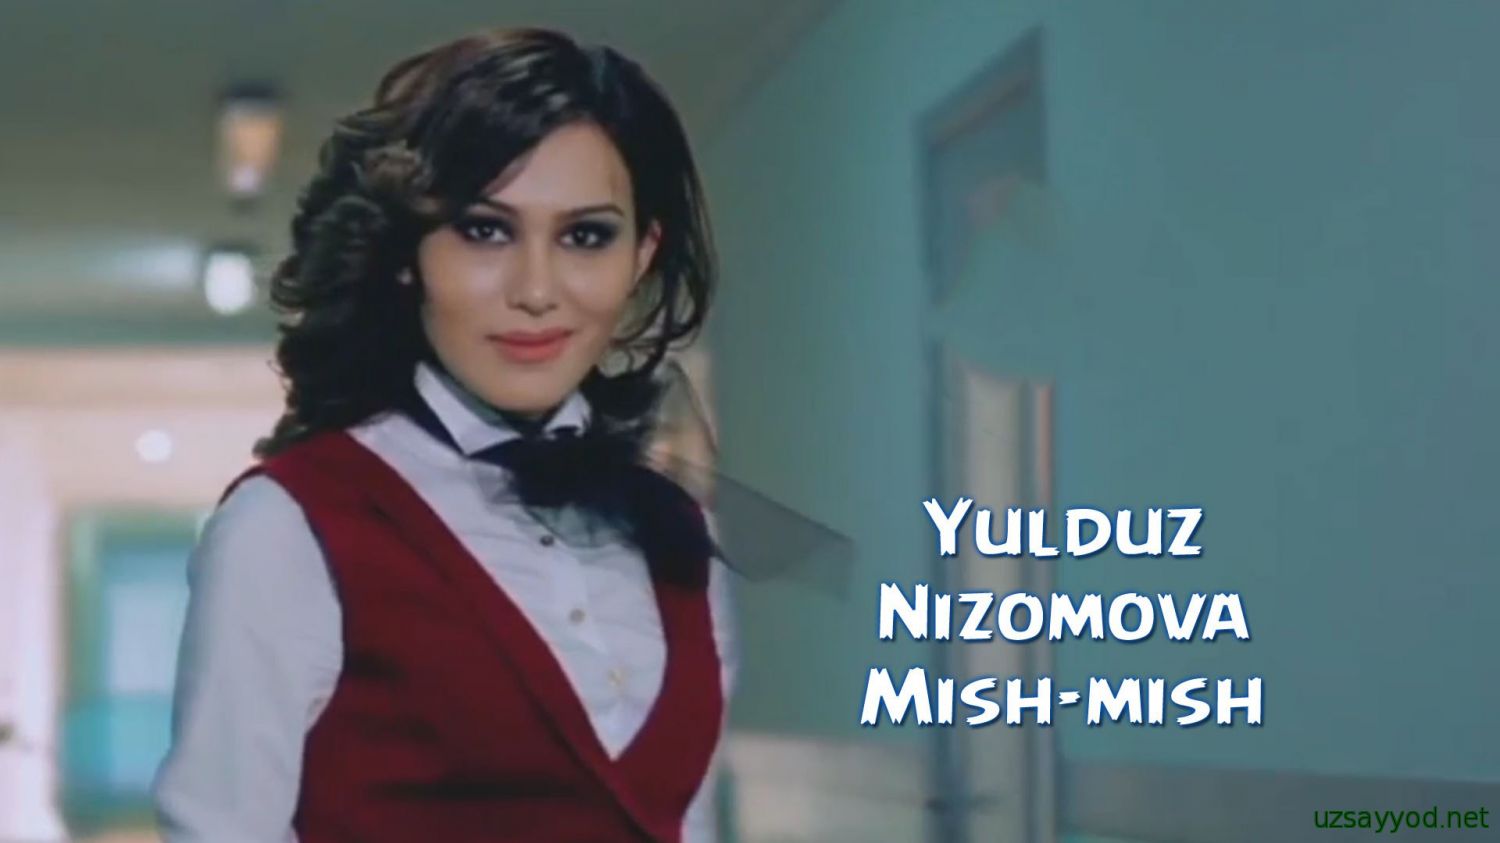 Yulduz Nizomova - Mish-mish